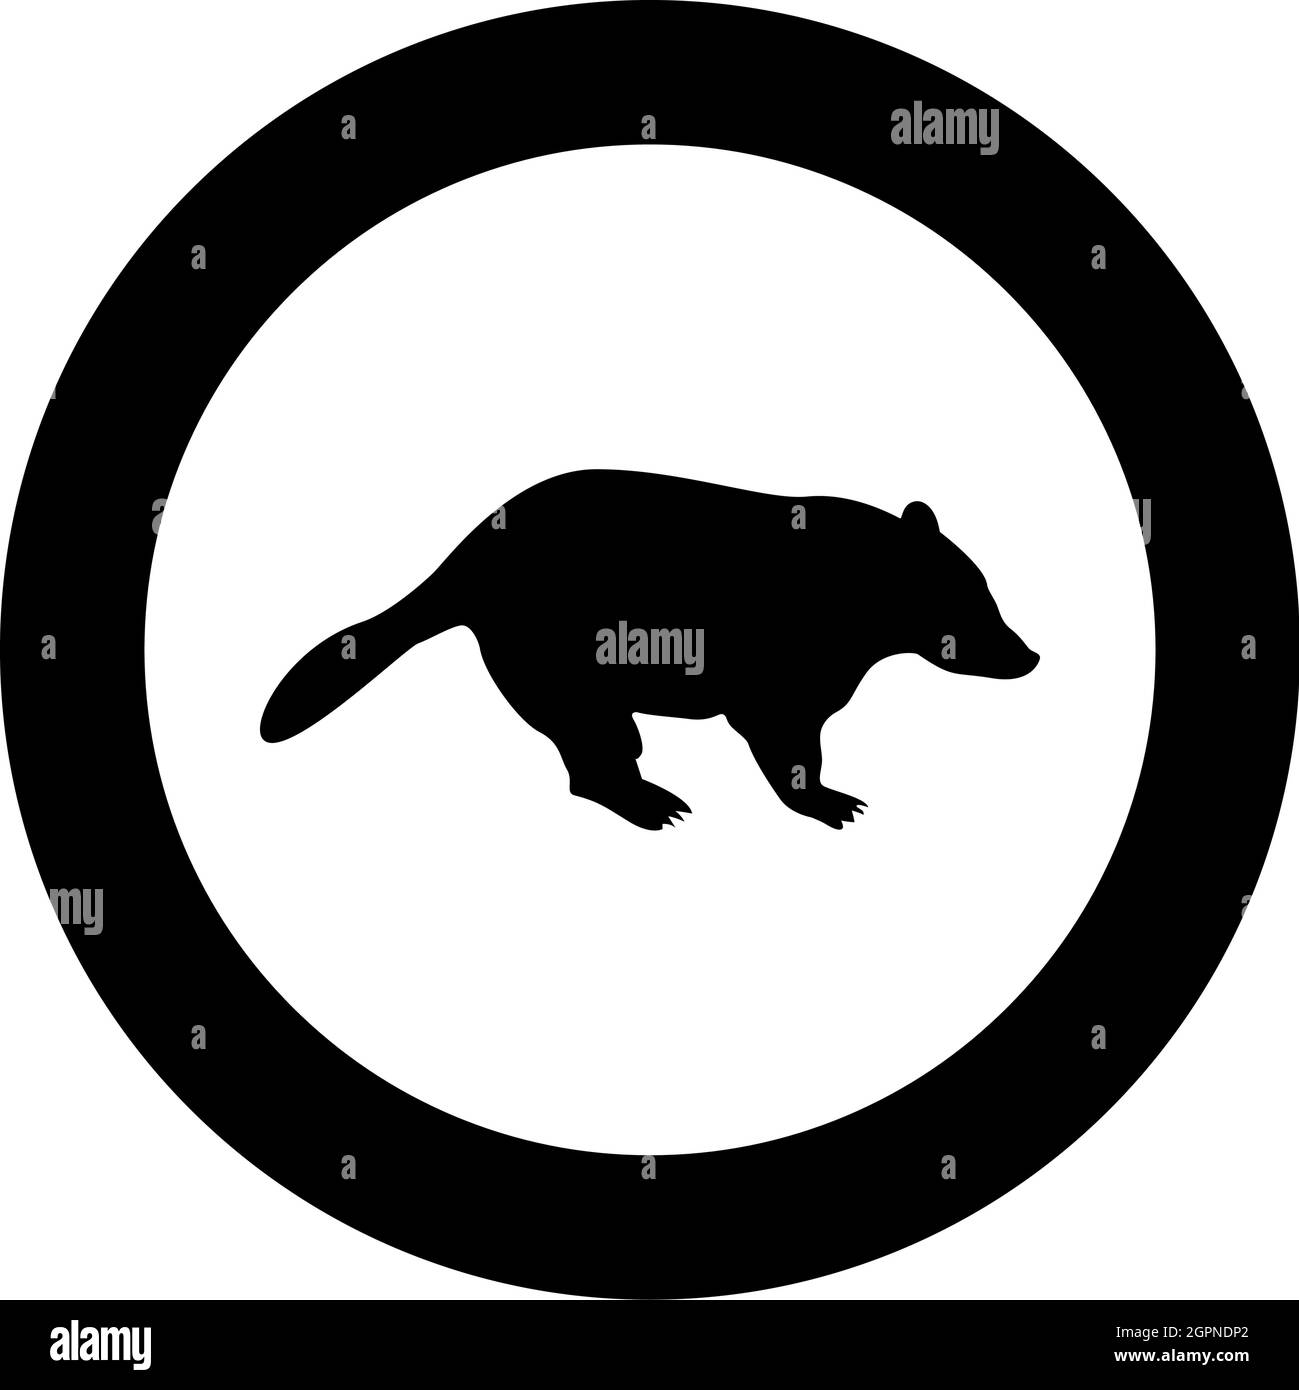 Badger animal sauvage Meles Taxus prédatrice mammifère famille kunihih Carnivore silhouette en cercle rond noir couleur vecteur illustration image de style Uni de contour Illustration de Vecteur